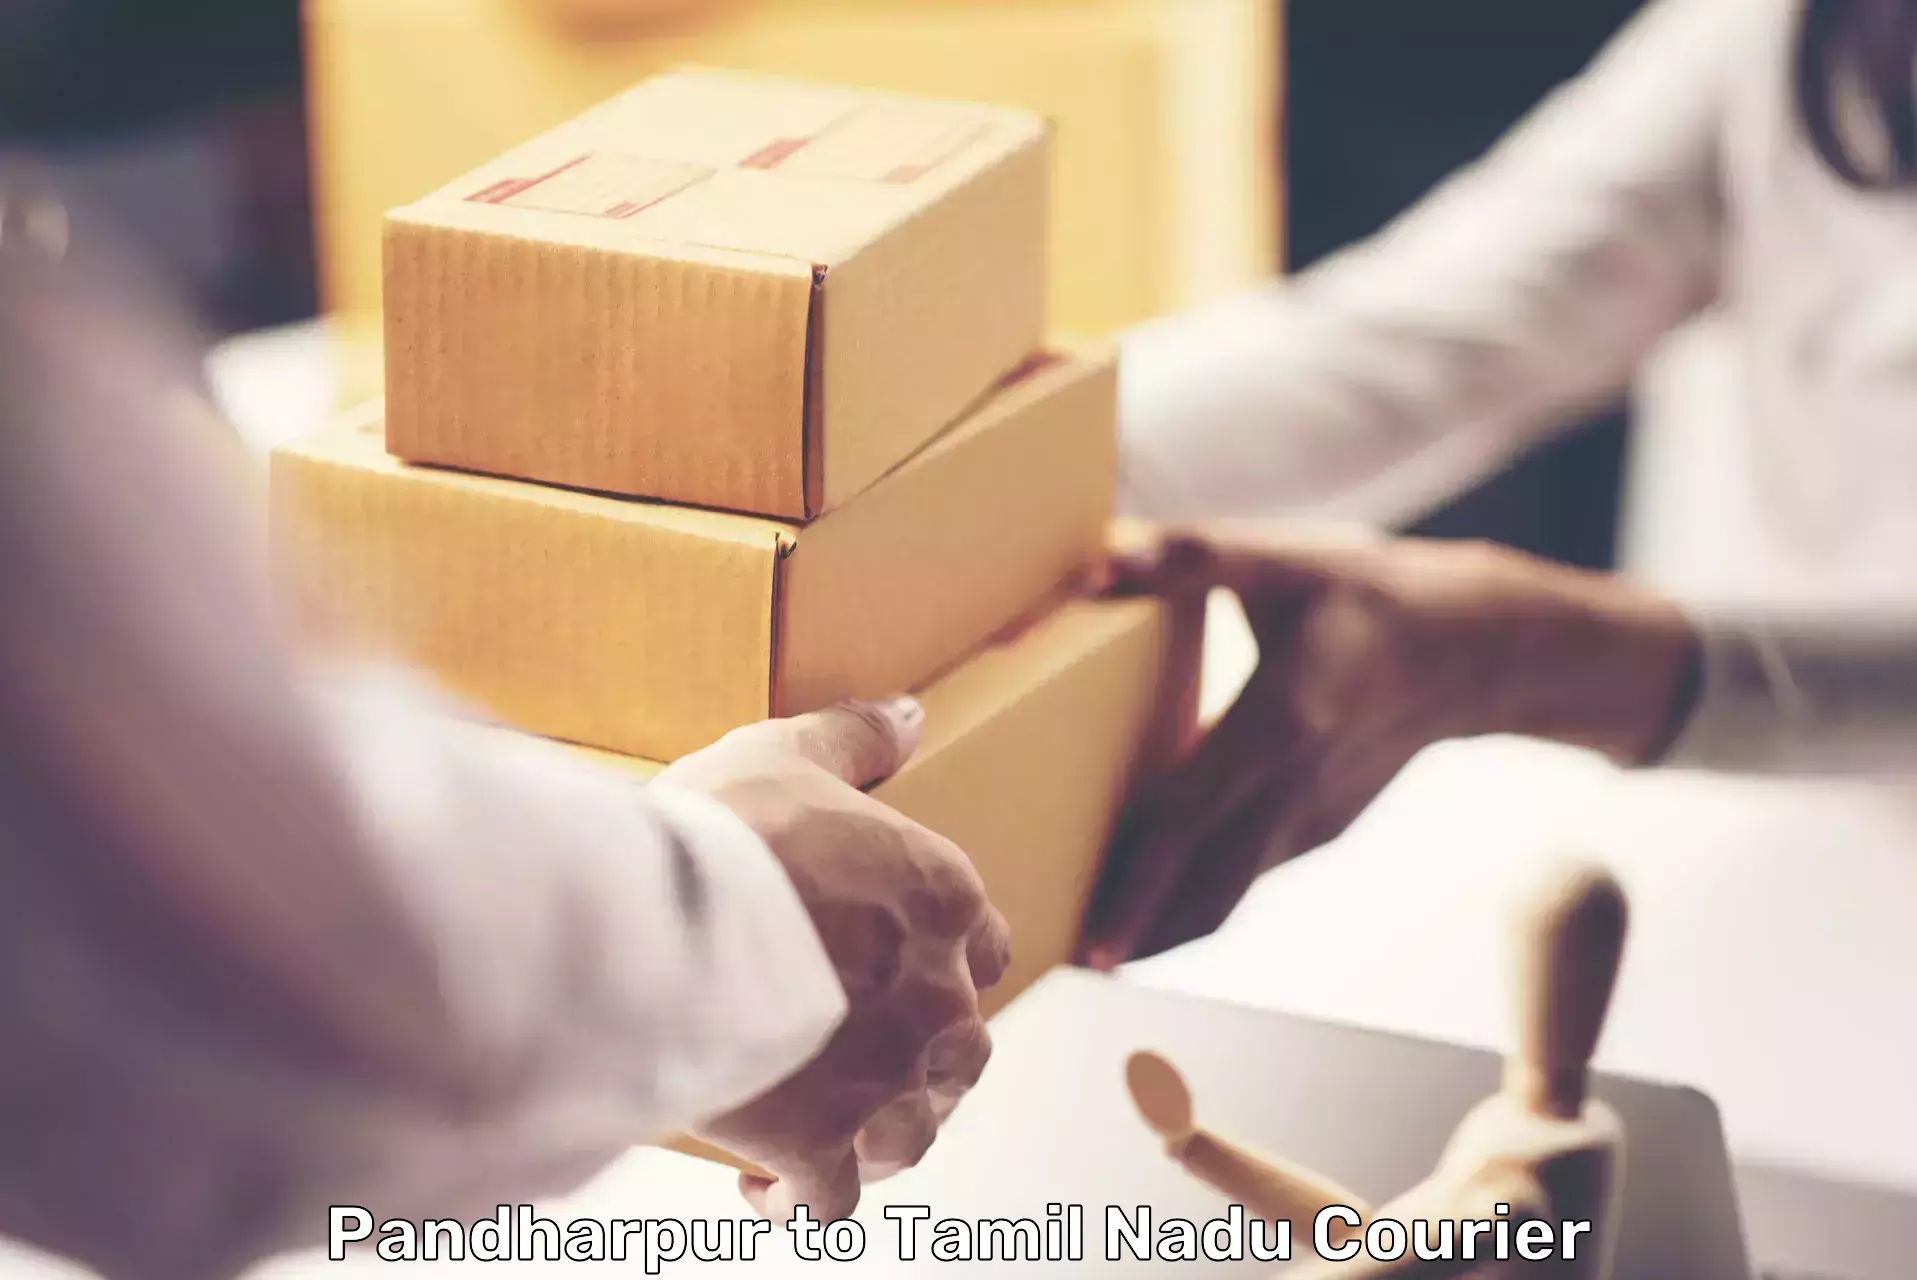 Affordable parcel service Pandharpur to Kulithalai